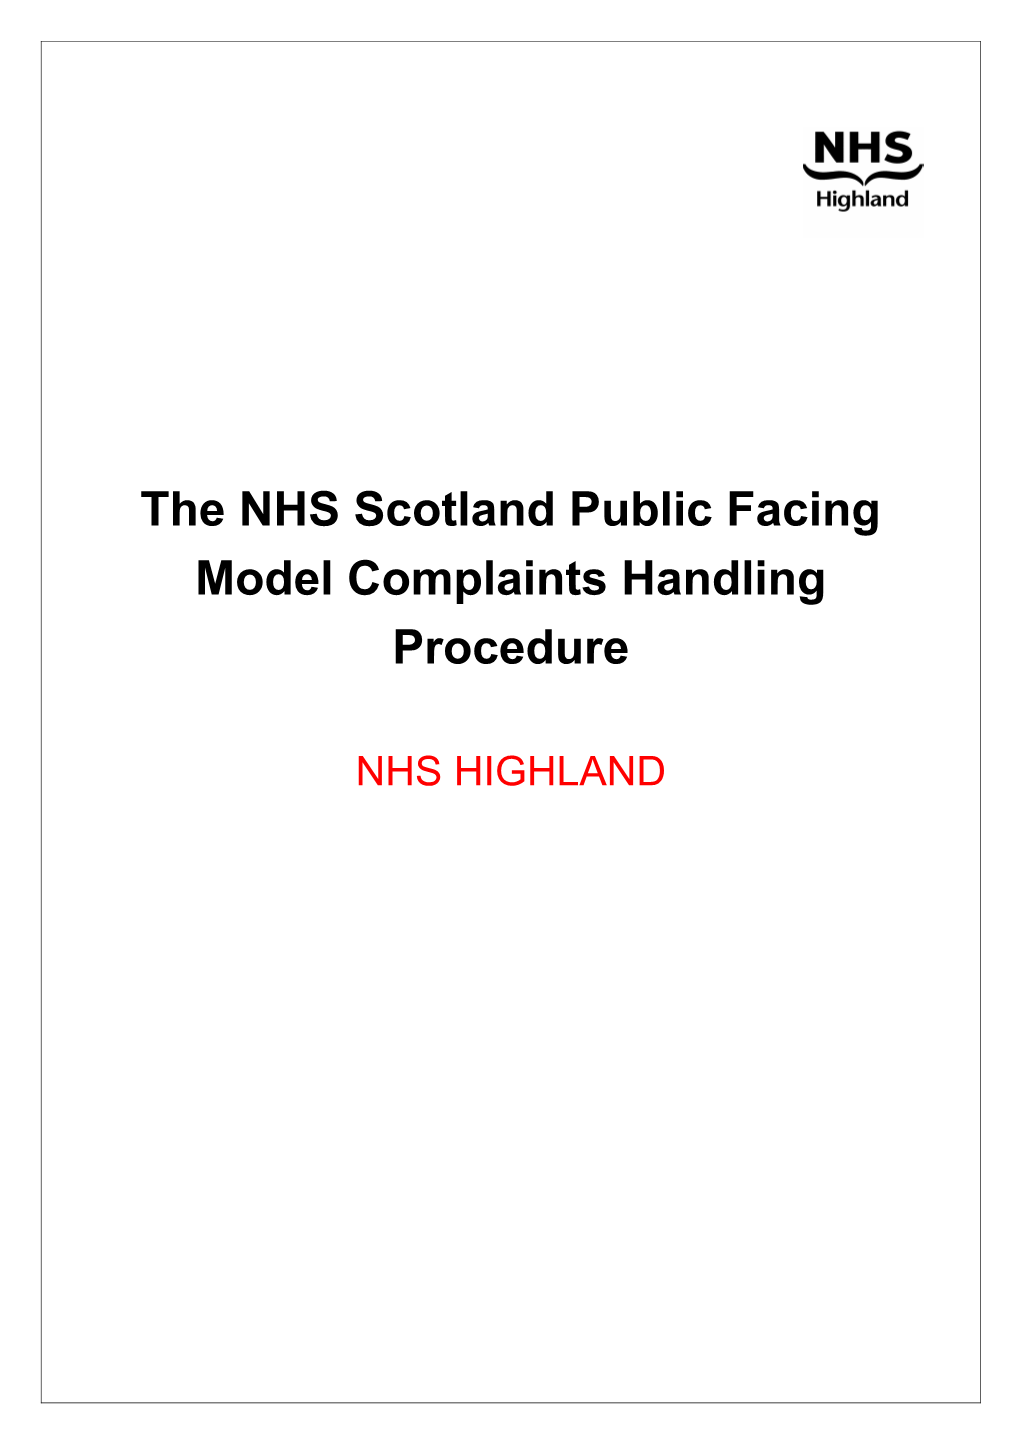 The NHS Scotland Customer Facing CHP